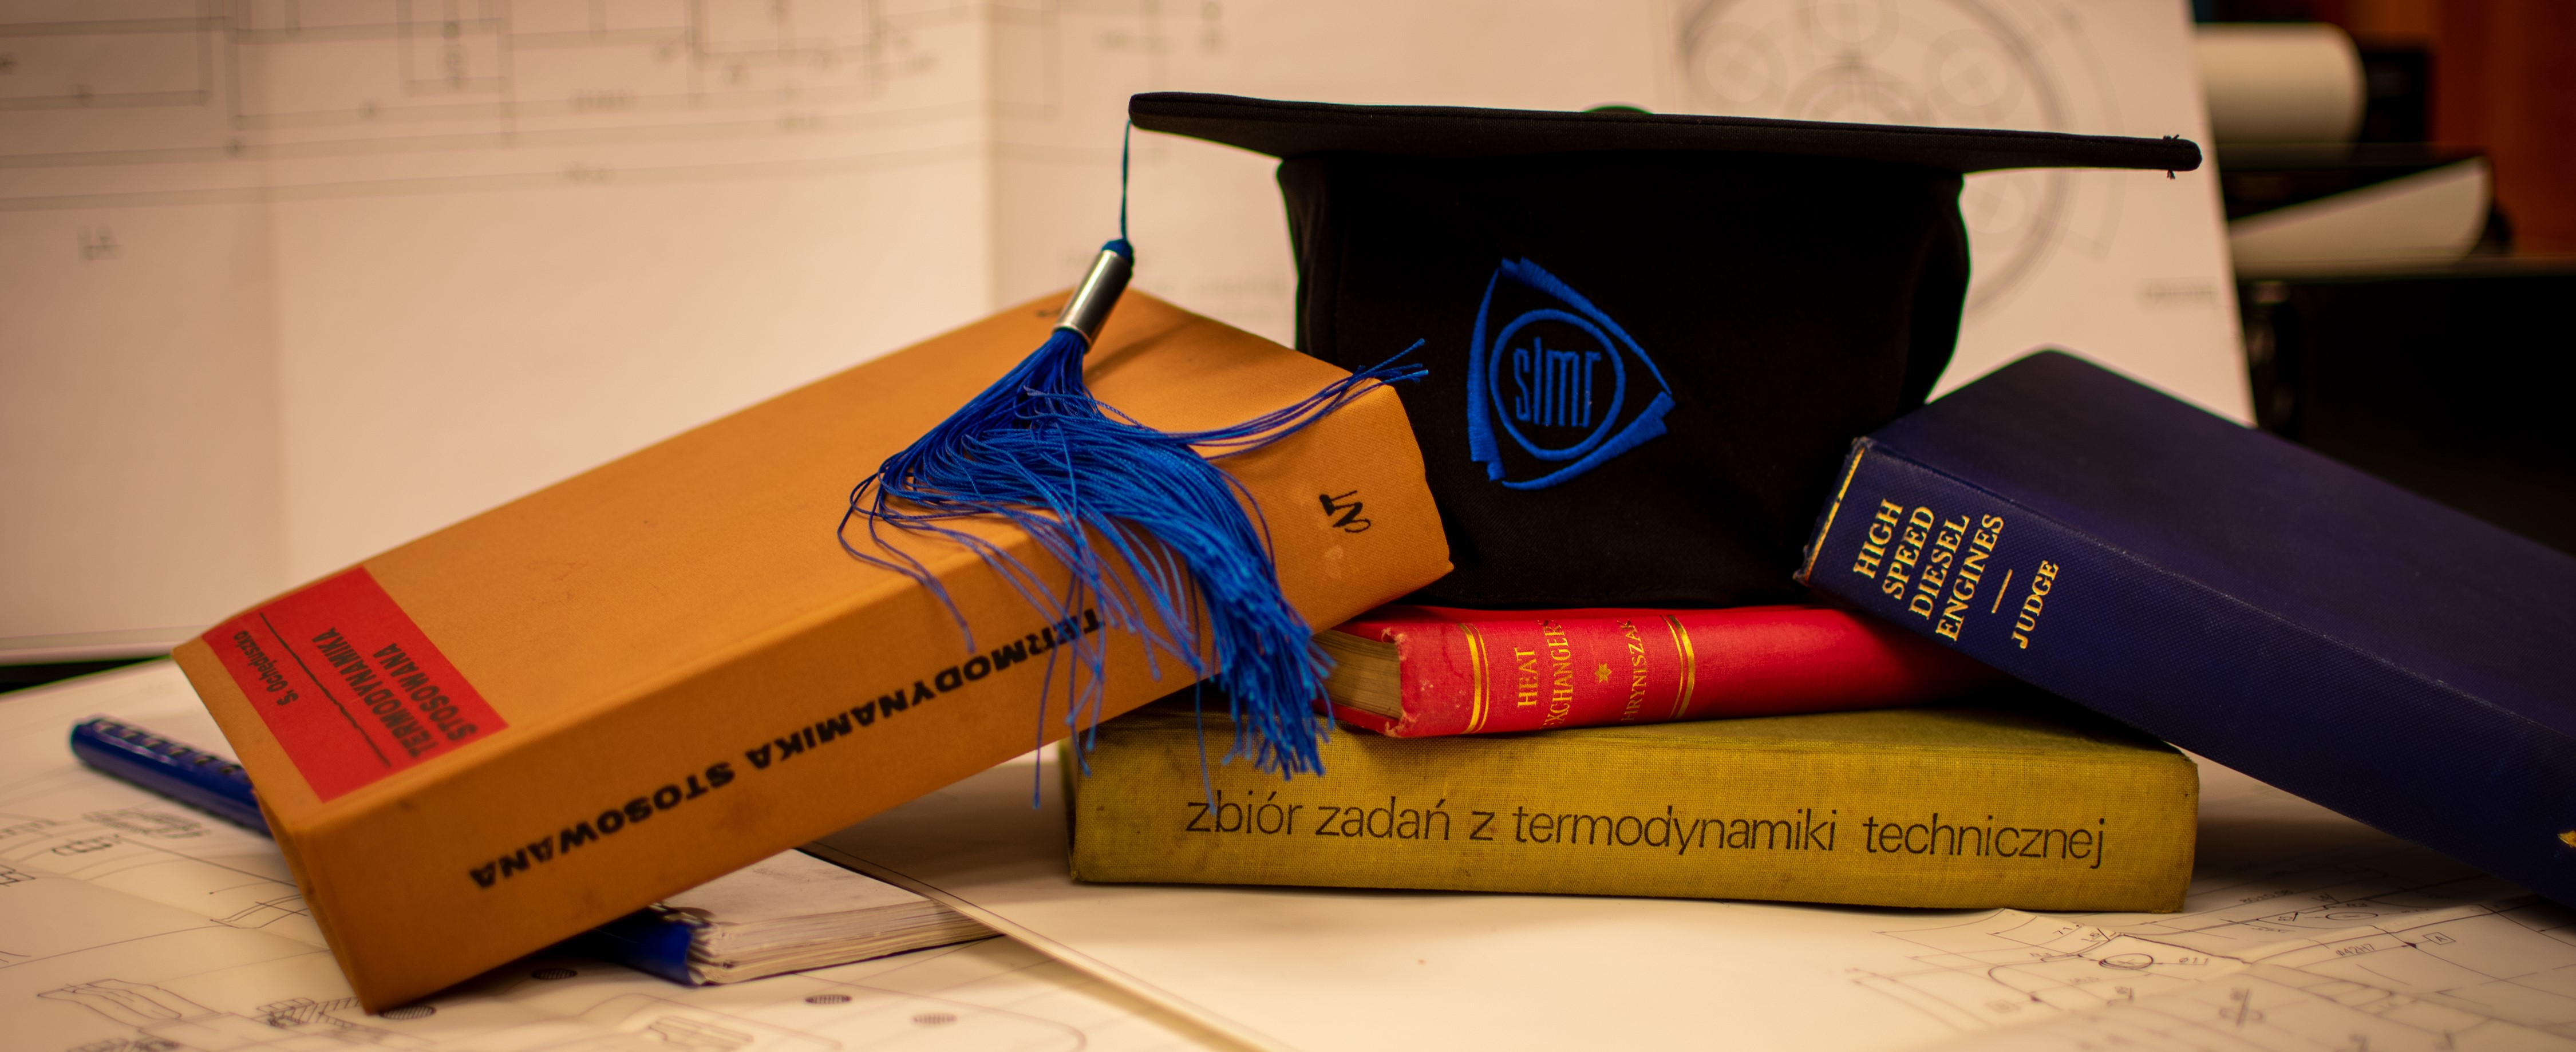 Czapka absolwenta Wydziału SiMR leżąca na podręcznikach.